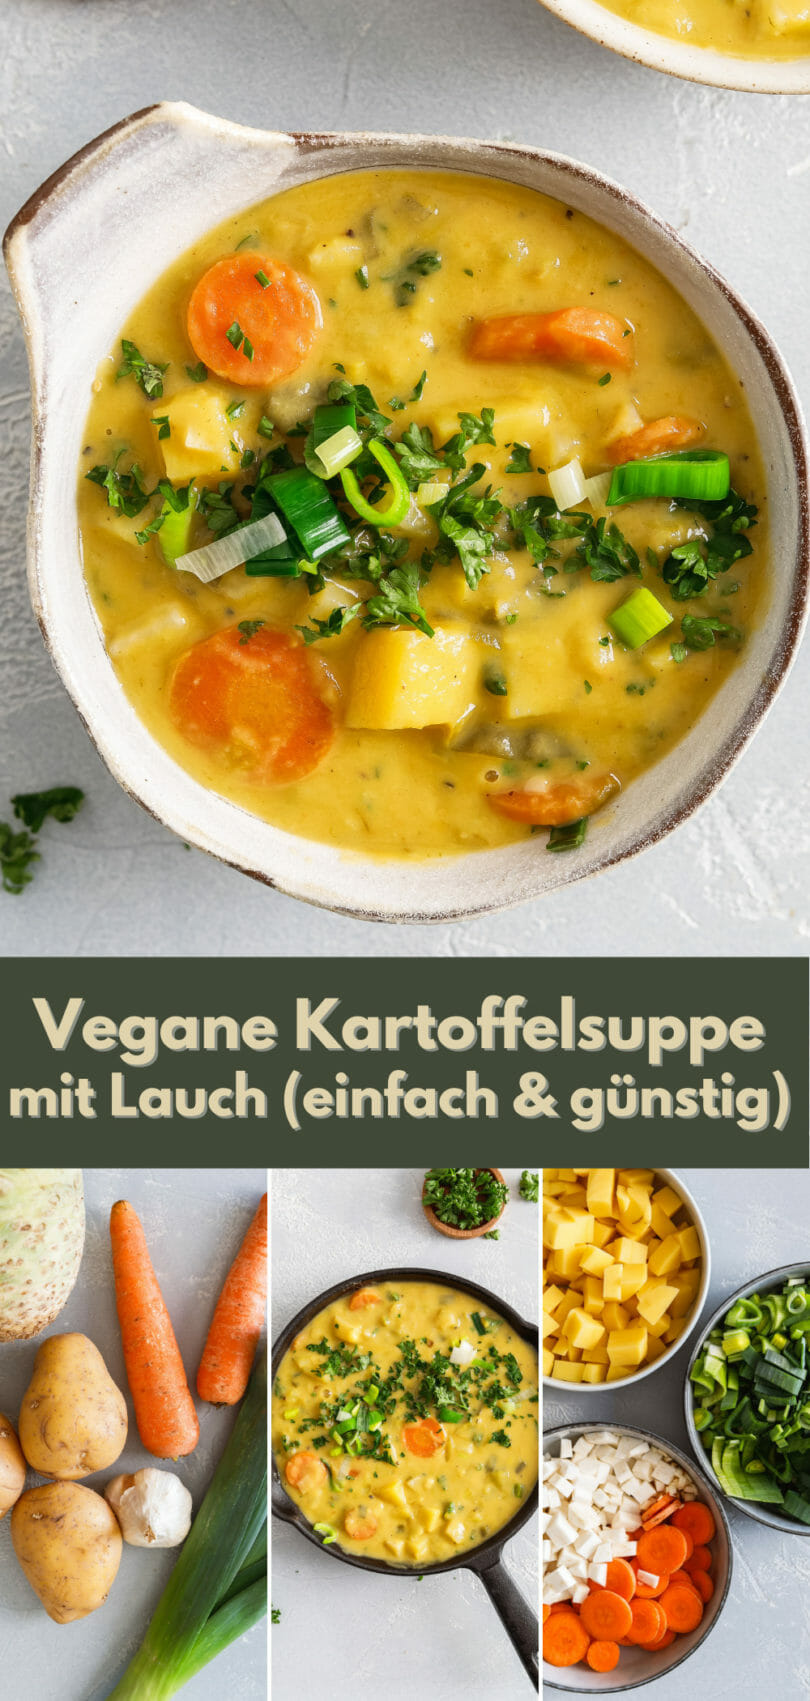 Collage für das Rezept "Vegane Kartoffelsuppe mit Lauch" zum Teilen auf Pinterest